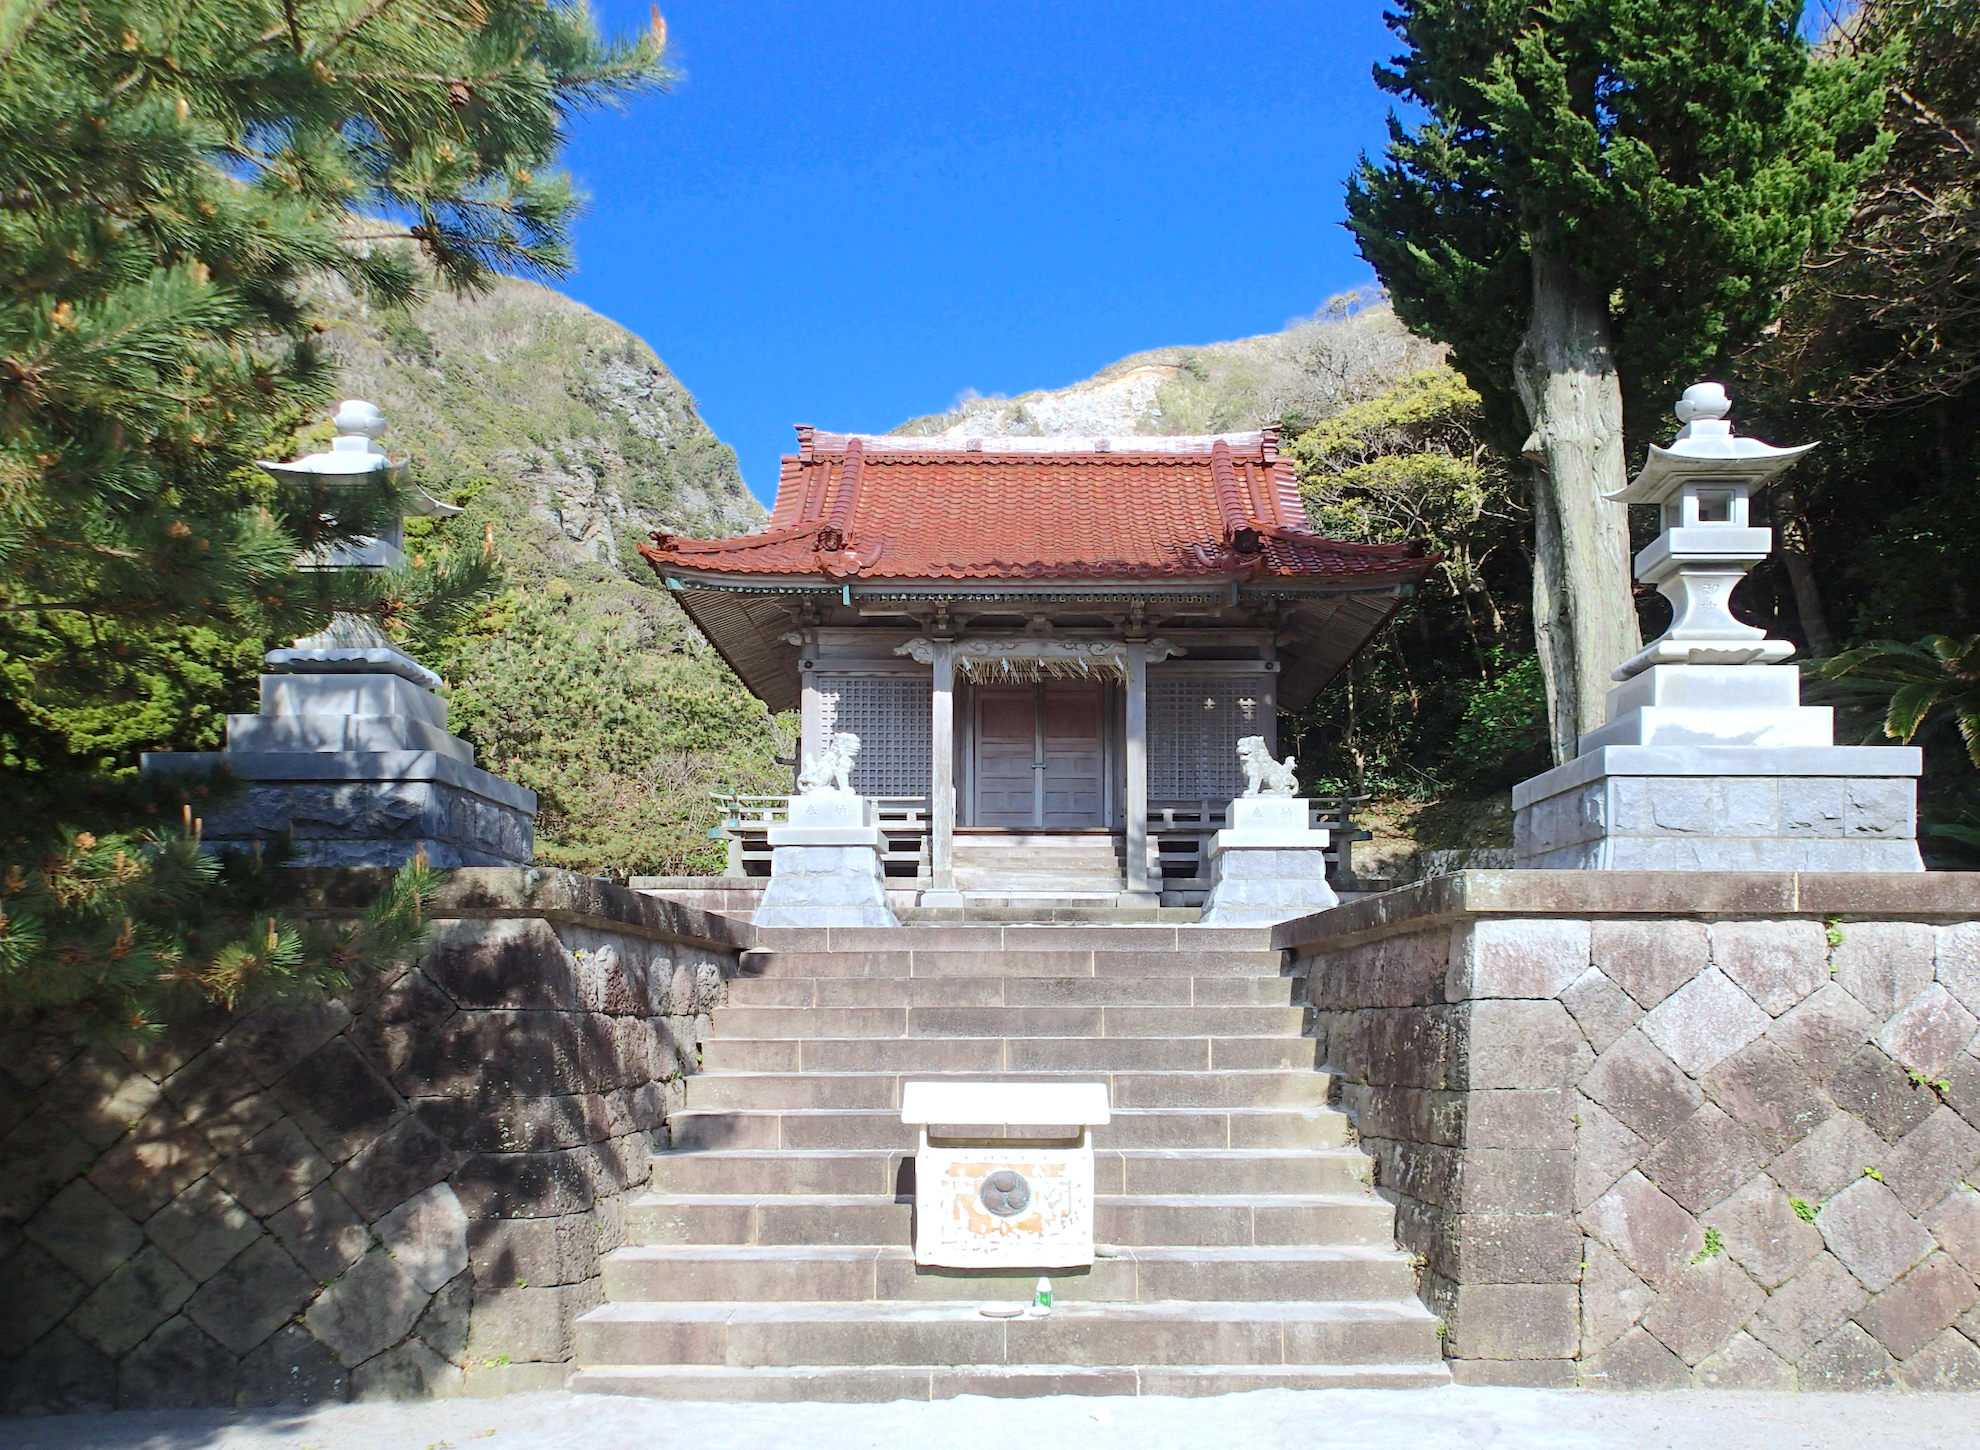 阿波命神社